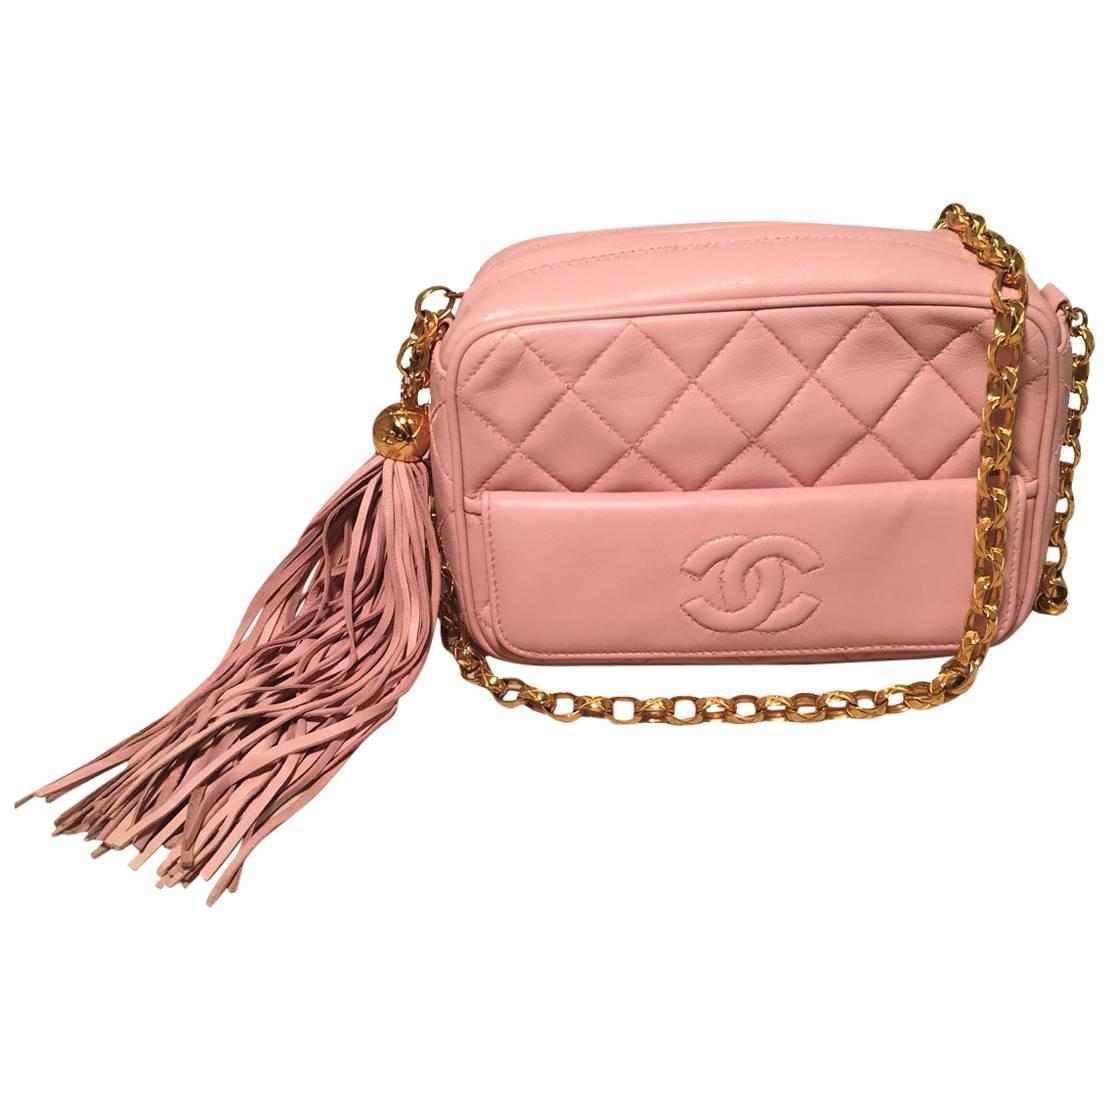 Chanel Vintage Pink Quilted Leather Tassel Zip Classic Shoulder Bag